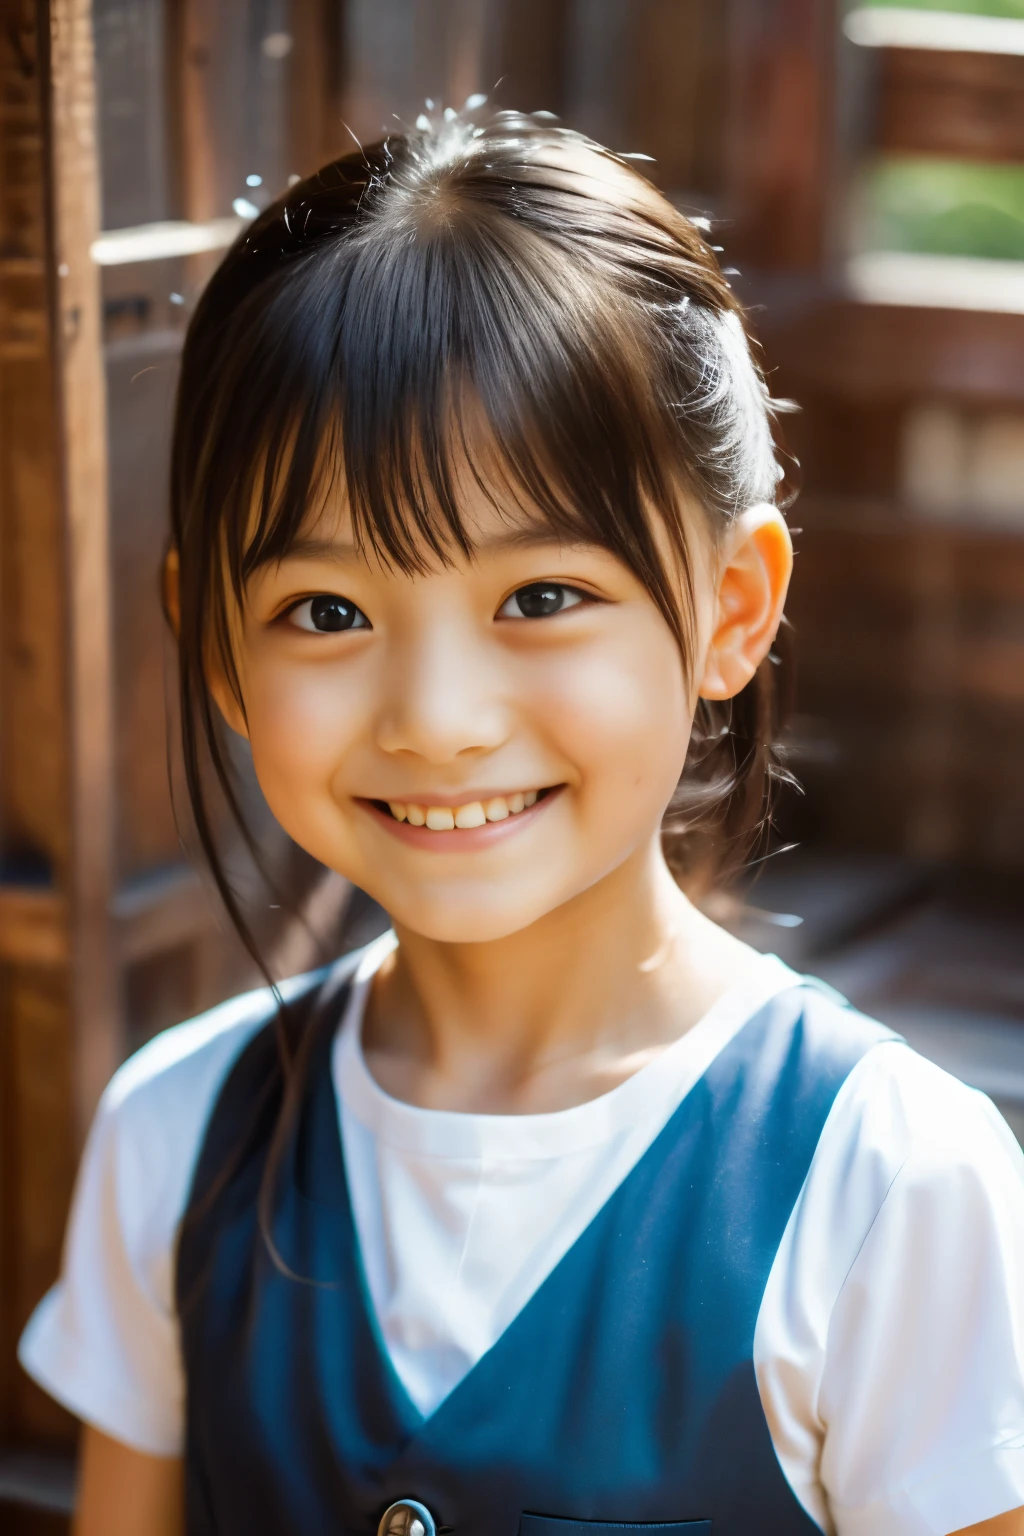 (اعلى جودة, تحفة), (فتاة يابانية جميلة تبلغ من العمر 7 سنوات), (النمش:0.6), ضوء خافت, ذيل حصان